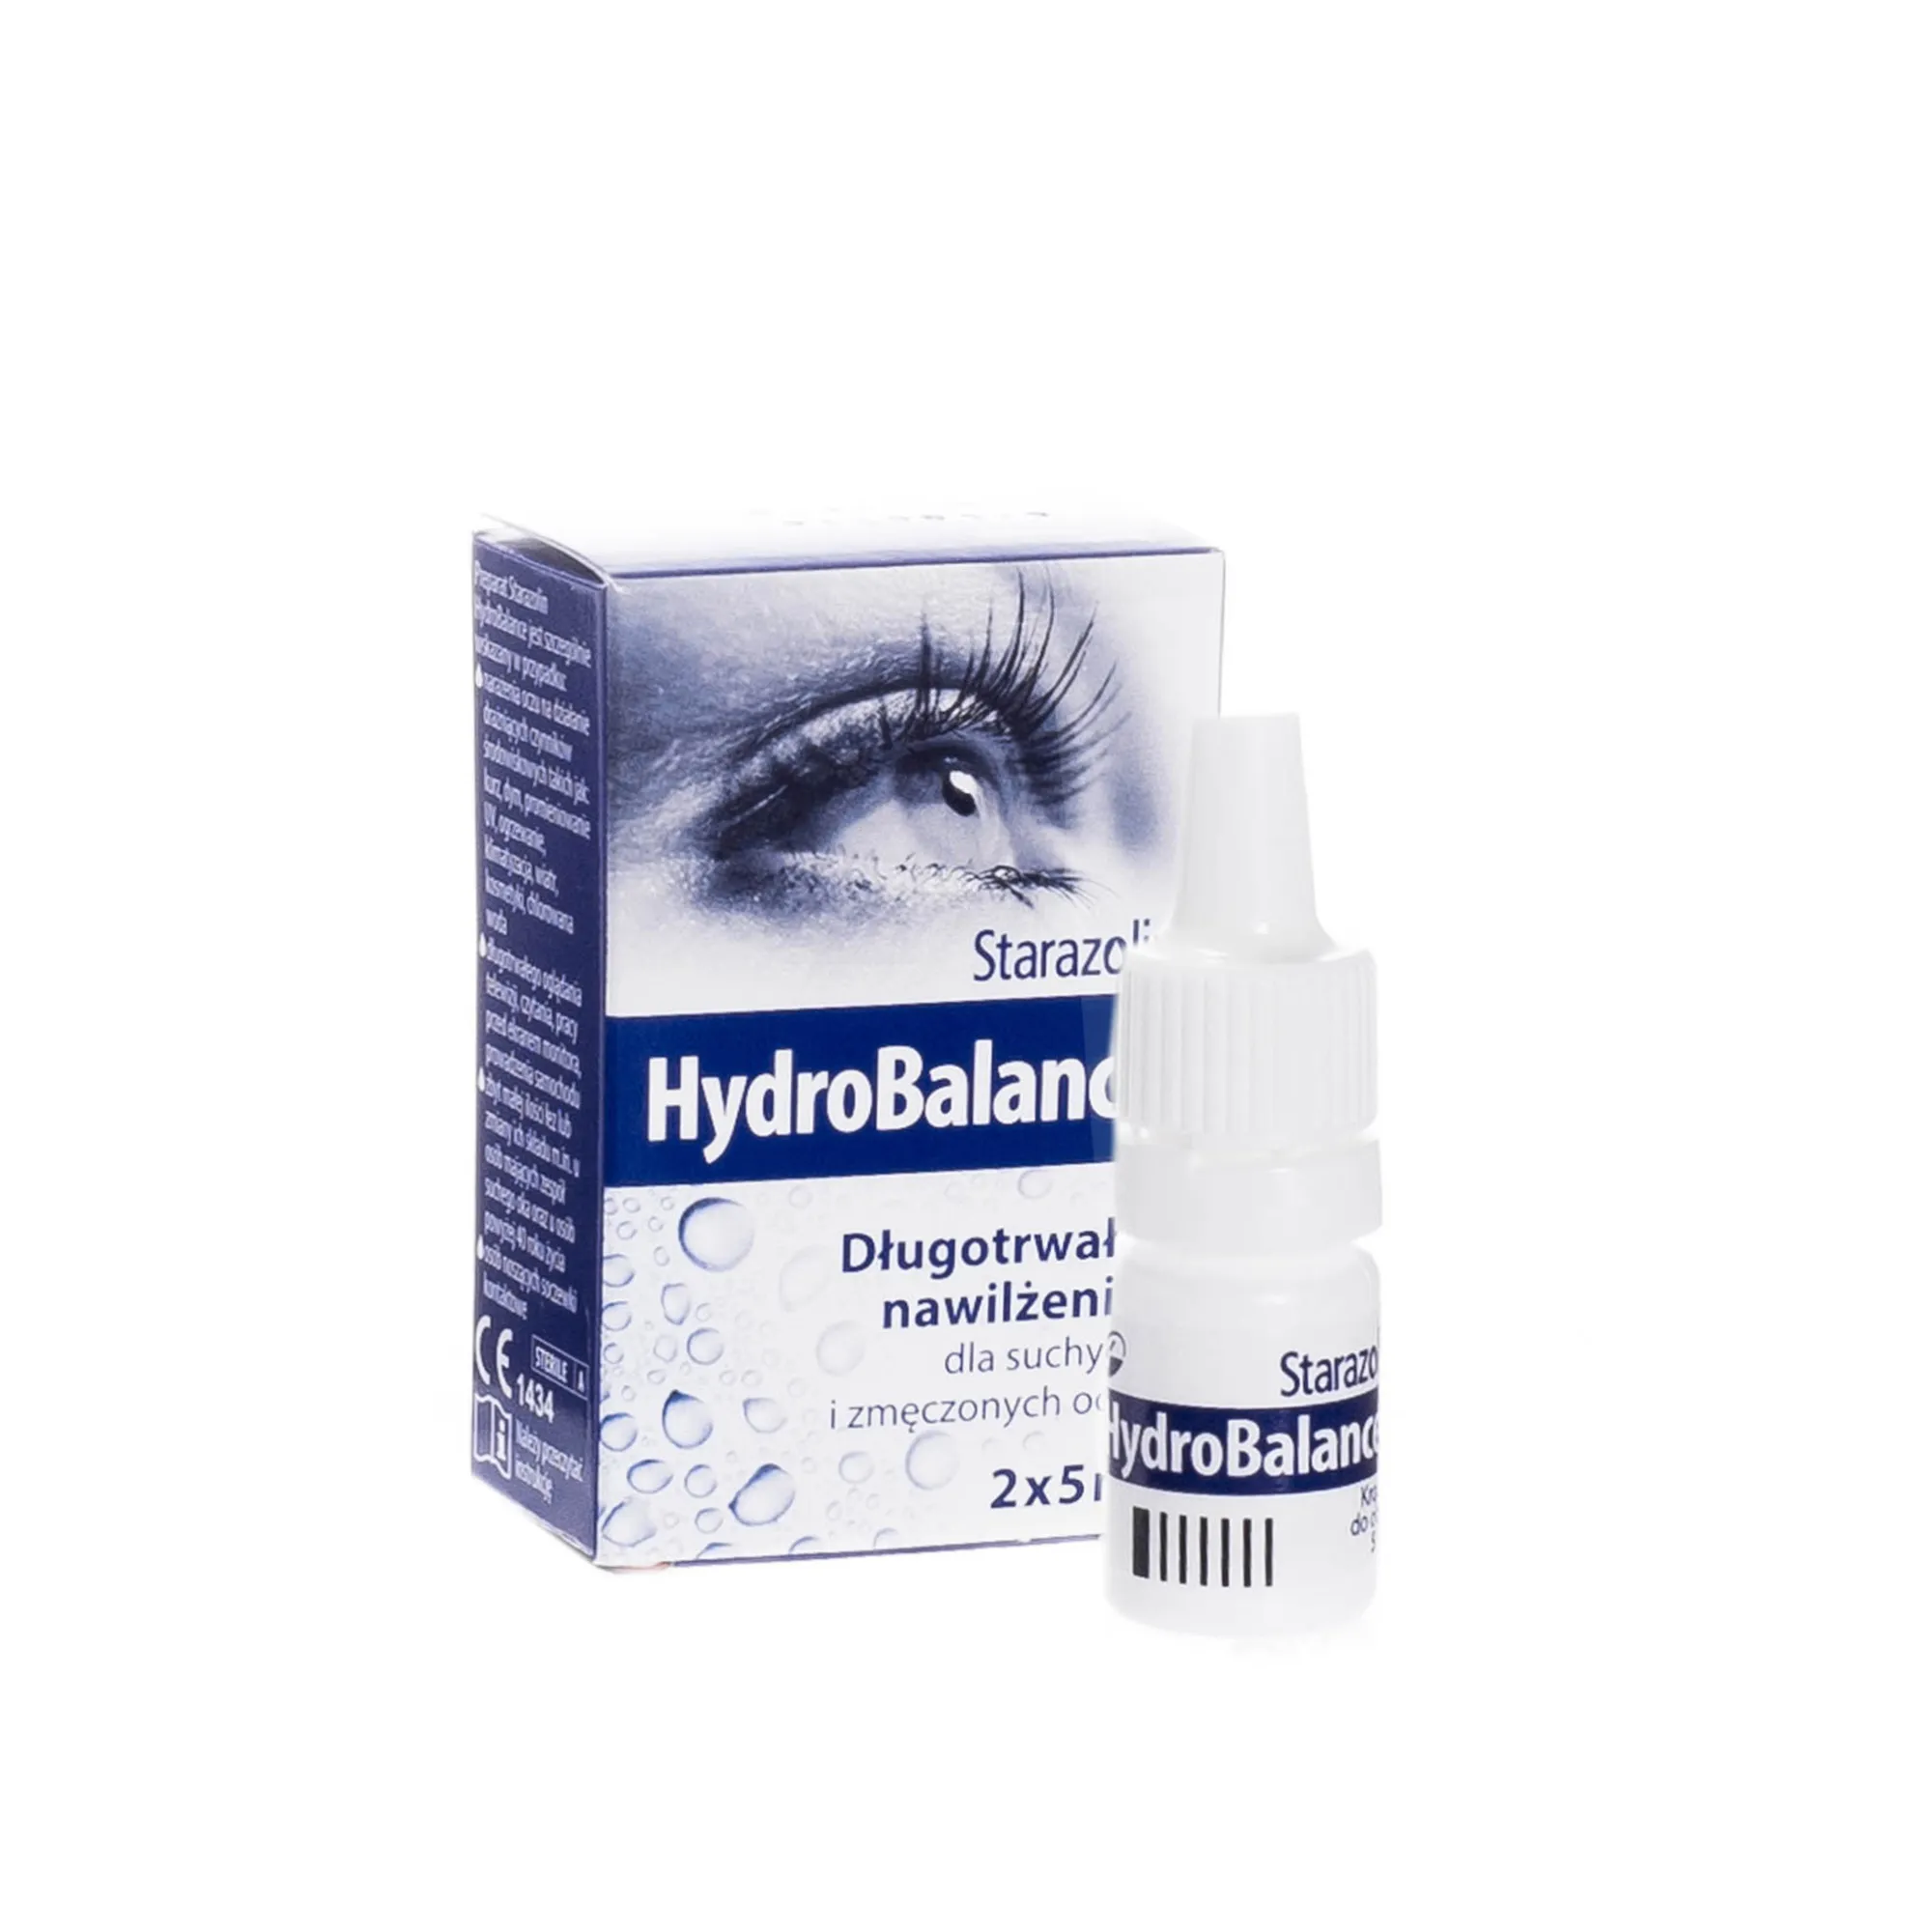 Starazolin HydroBalance , długotrwałe nawilżenie dla suchych i zmęczonych oczu, 2x5 ml